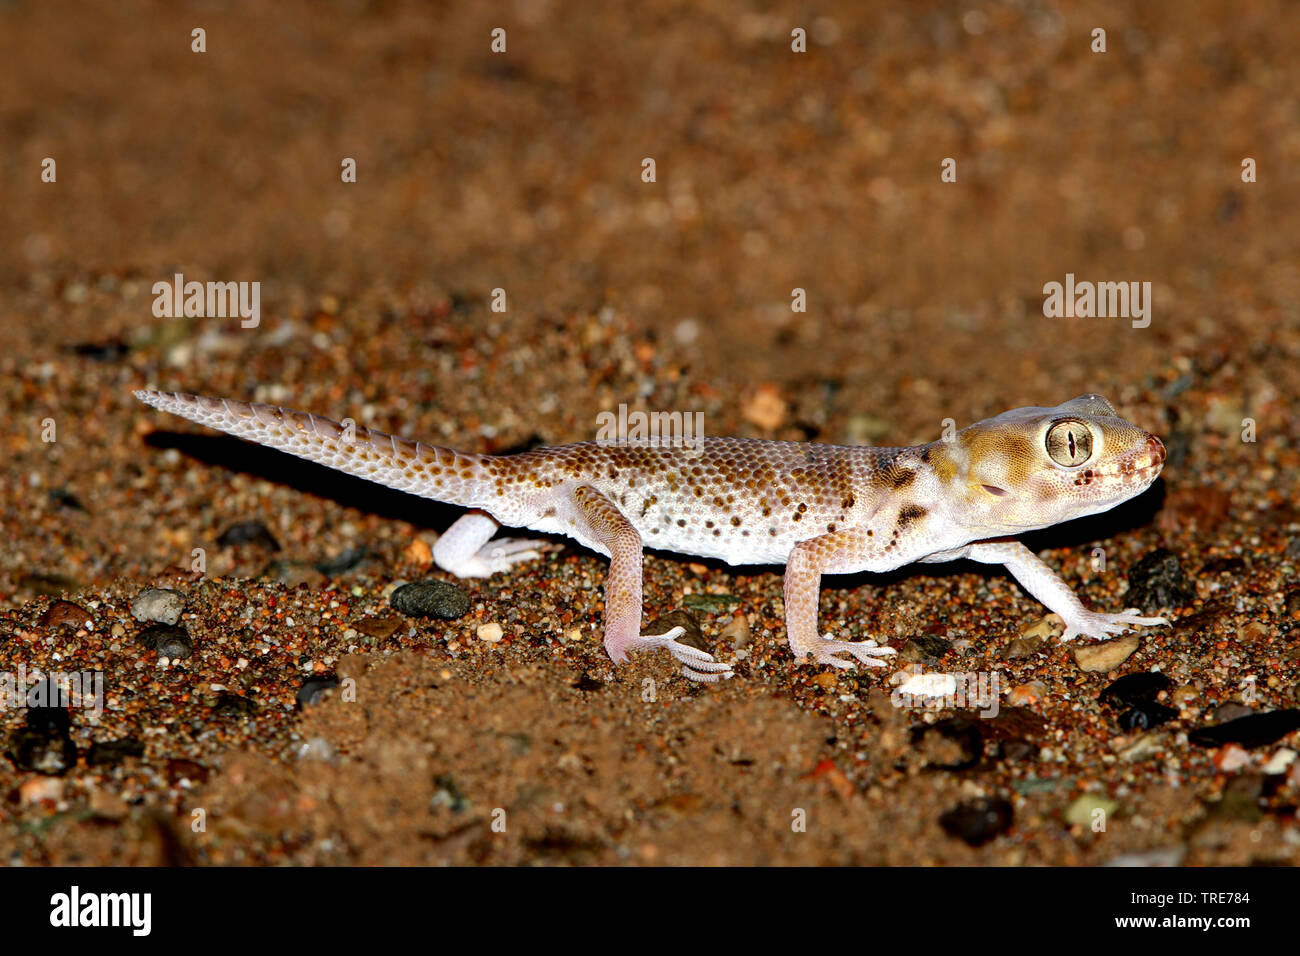 Plate-tailed Gecko, Przewalski's wonder Gecko (Teratoscincus przewalskii), on desert sand, Mongolia, Gobi Stock Photo